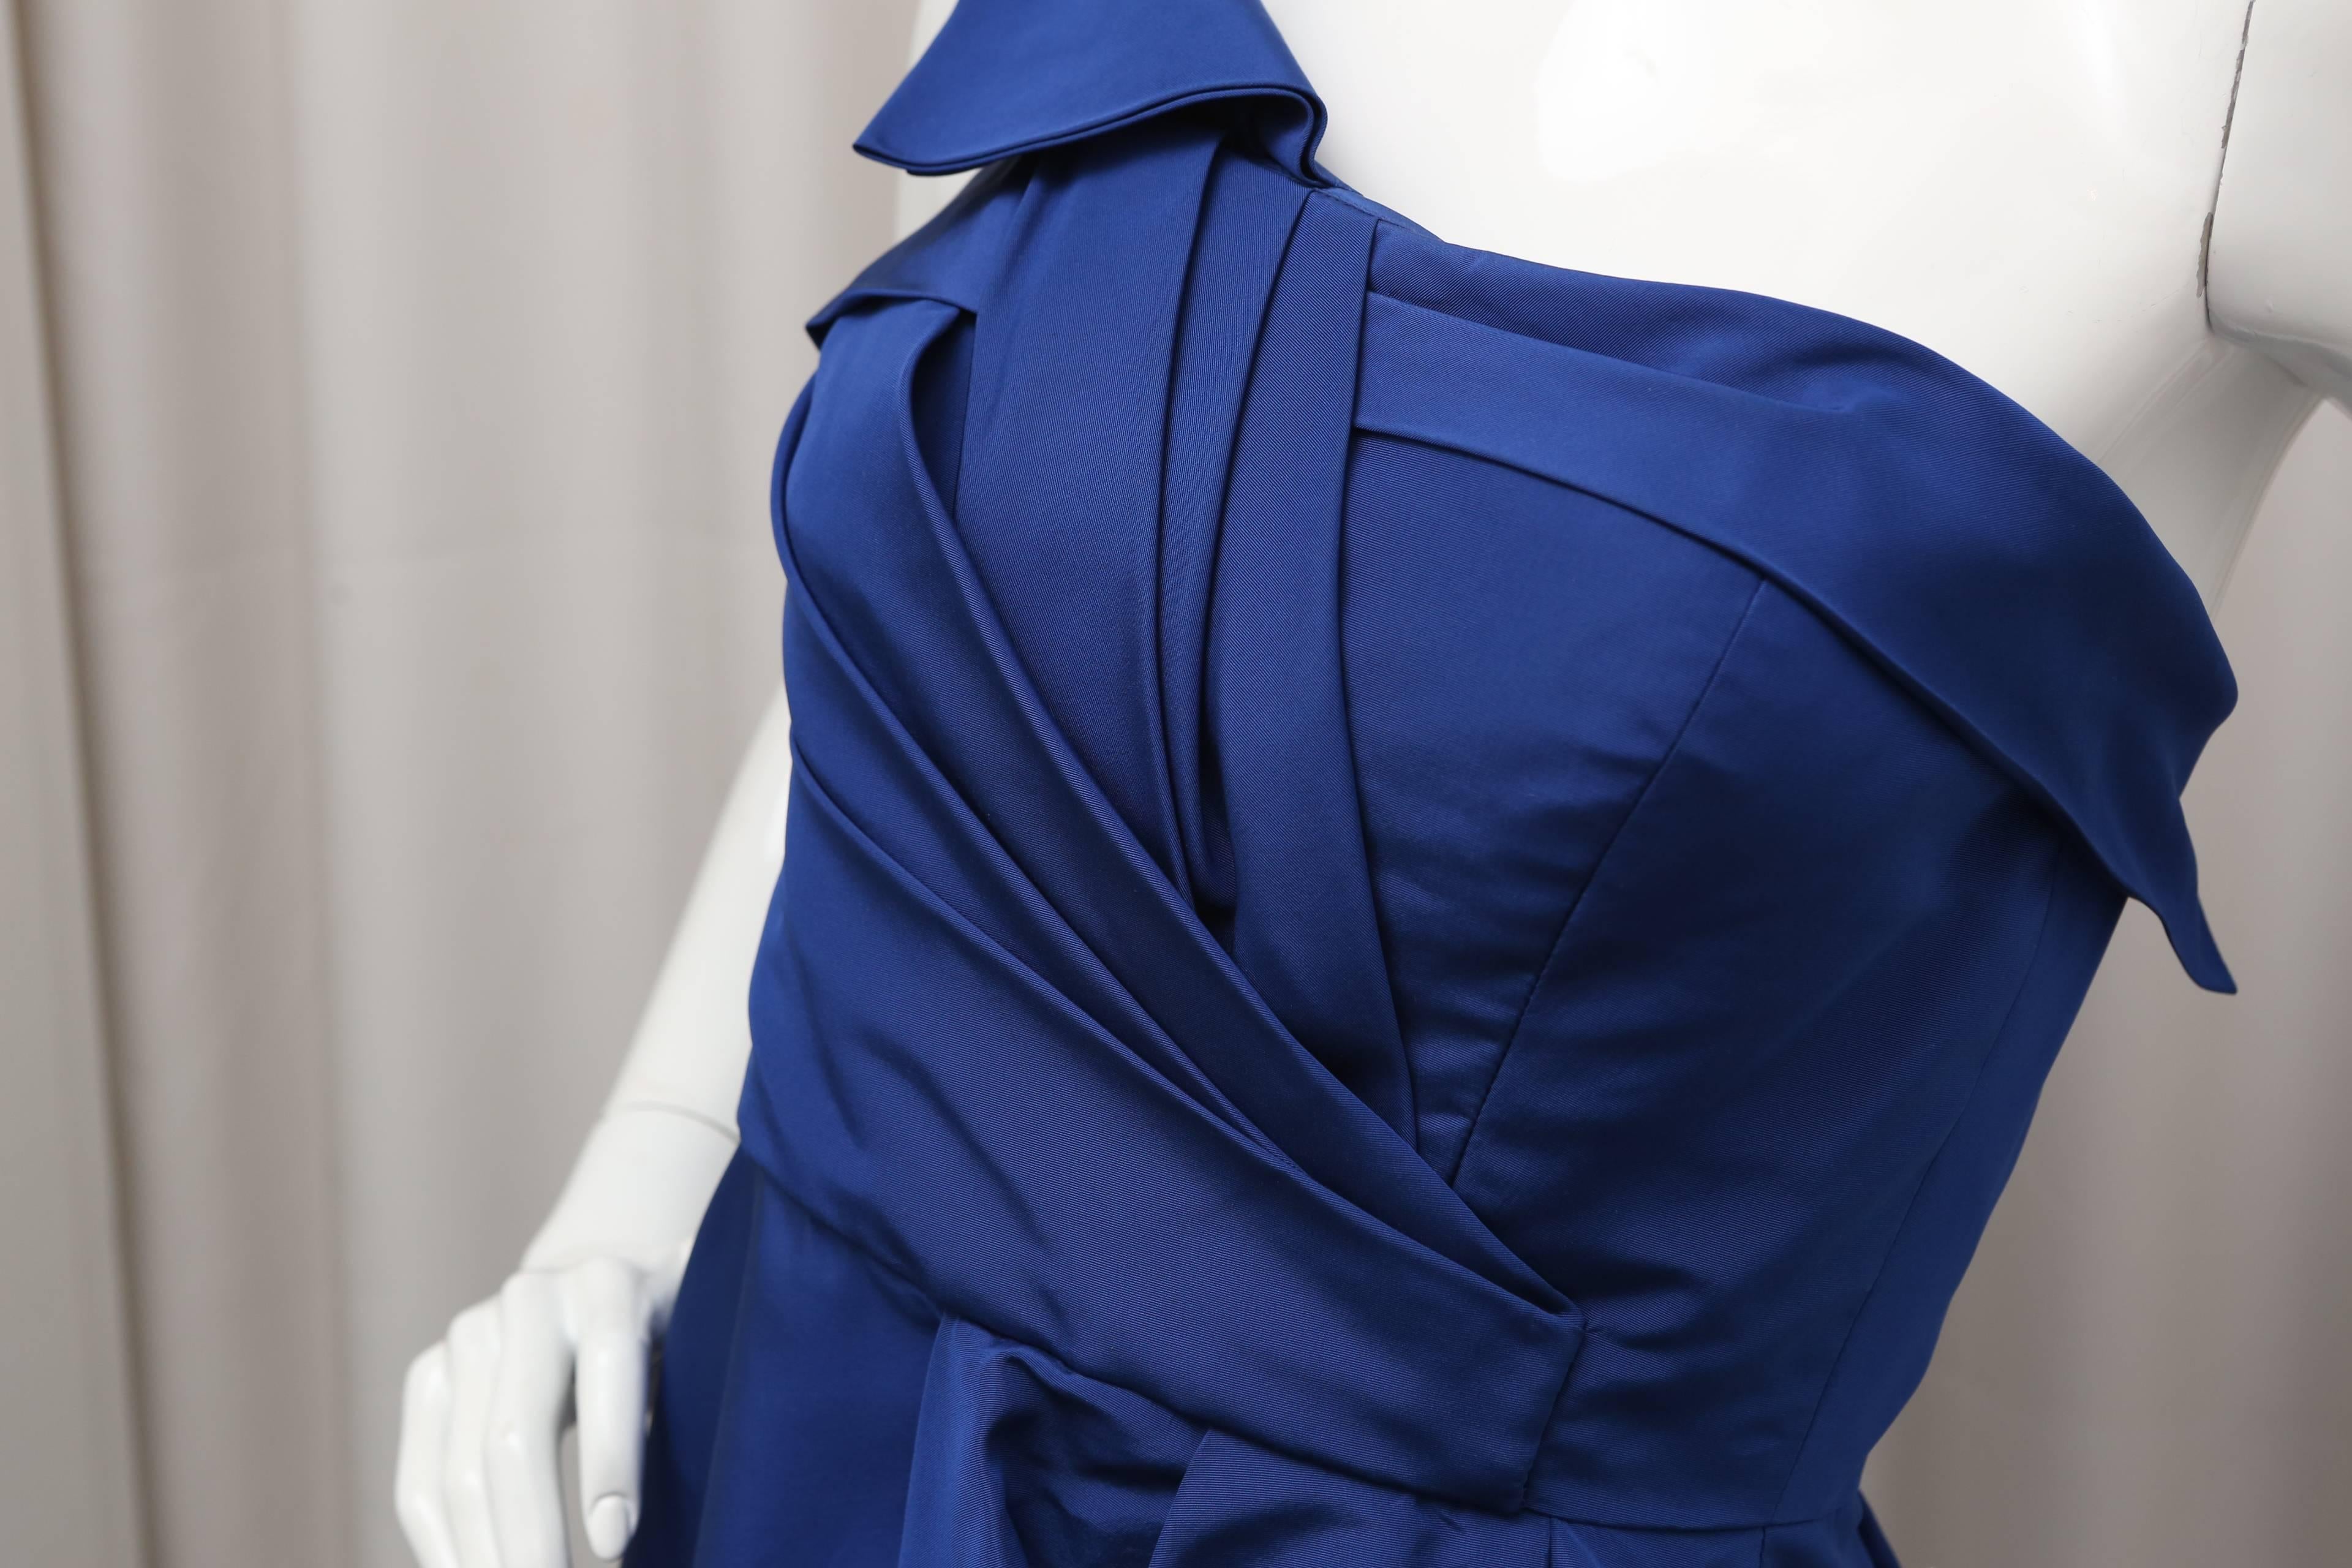 Women's Oscar de la Renta Royal Blue Dress